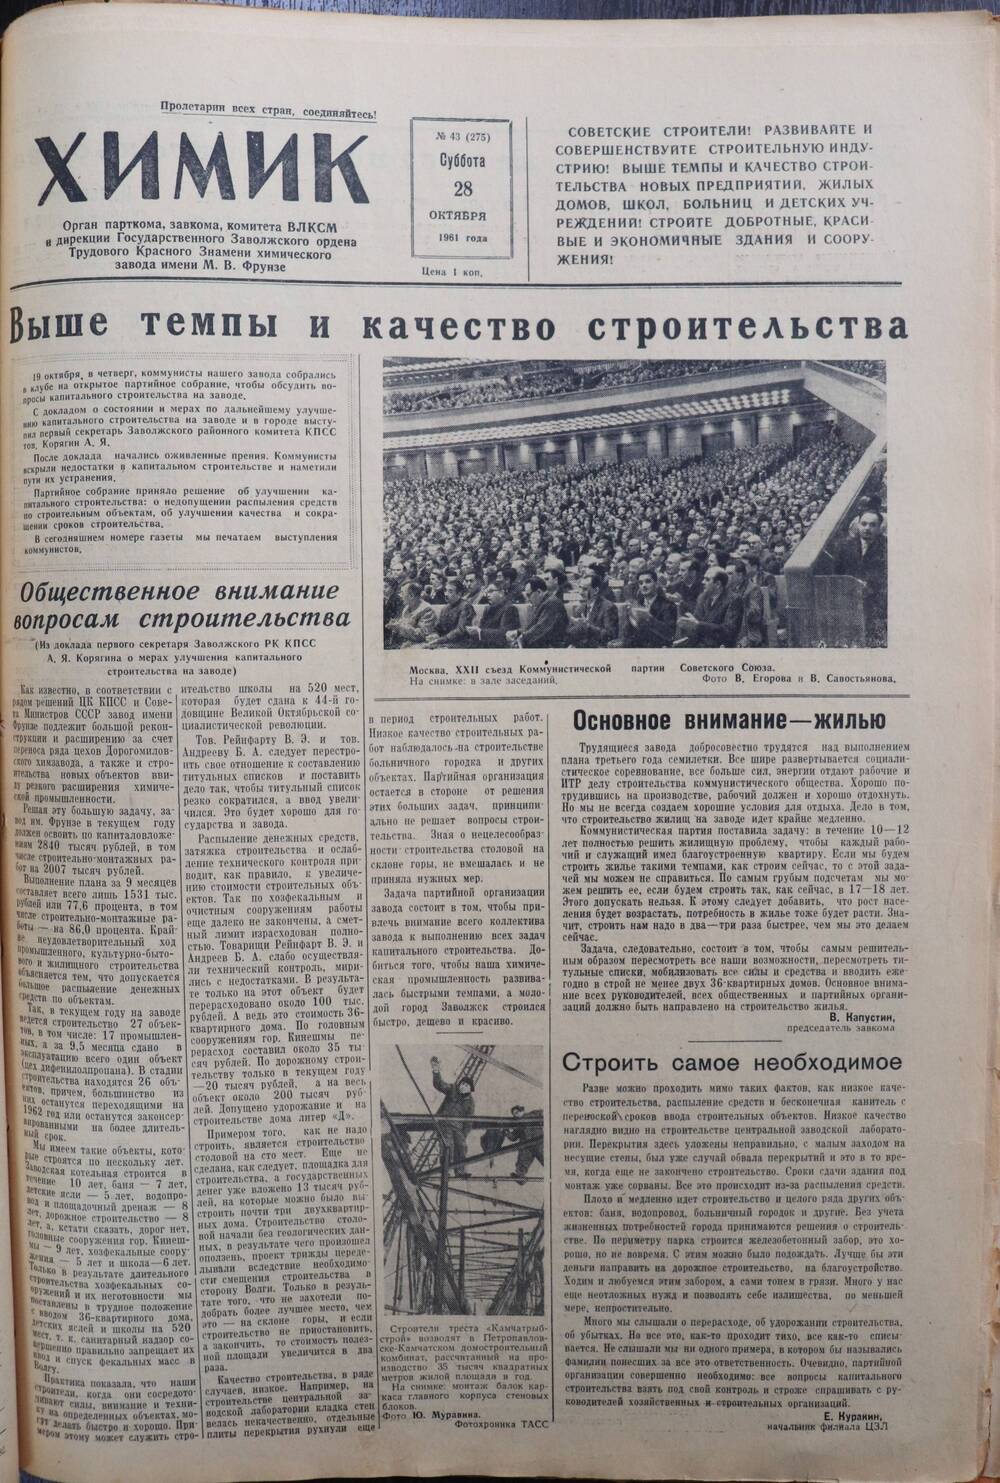 Газета «Химик» № 43 от 28 октября 1961 года.